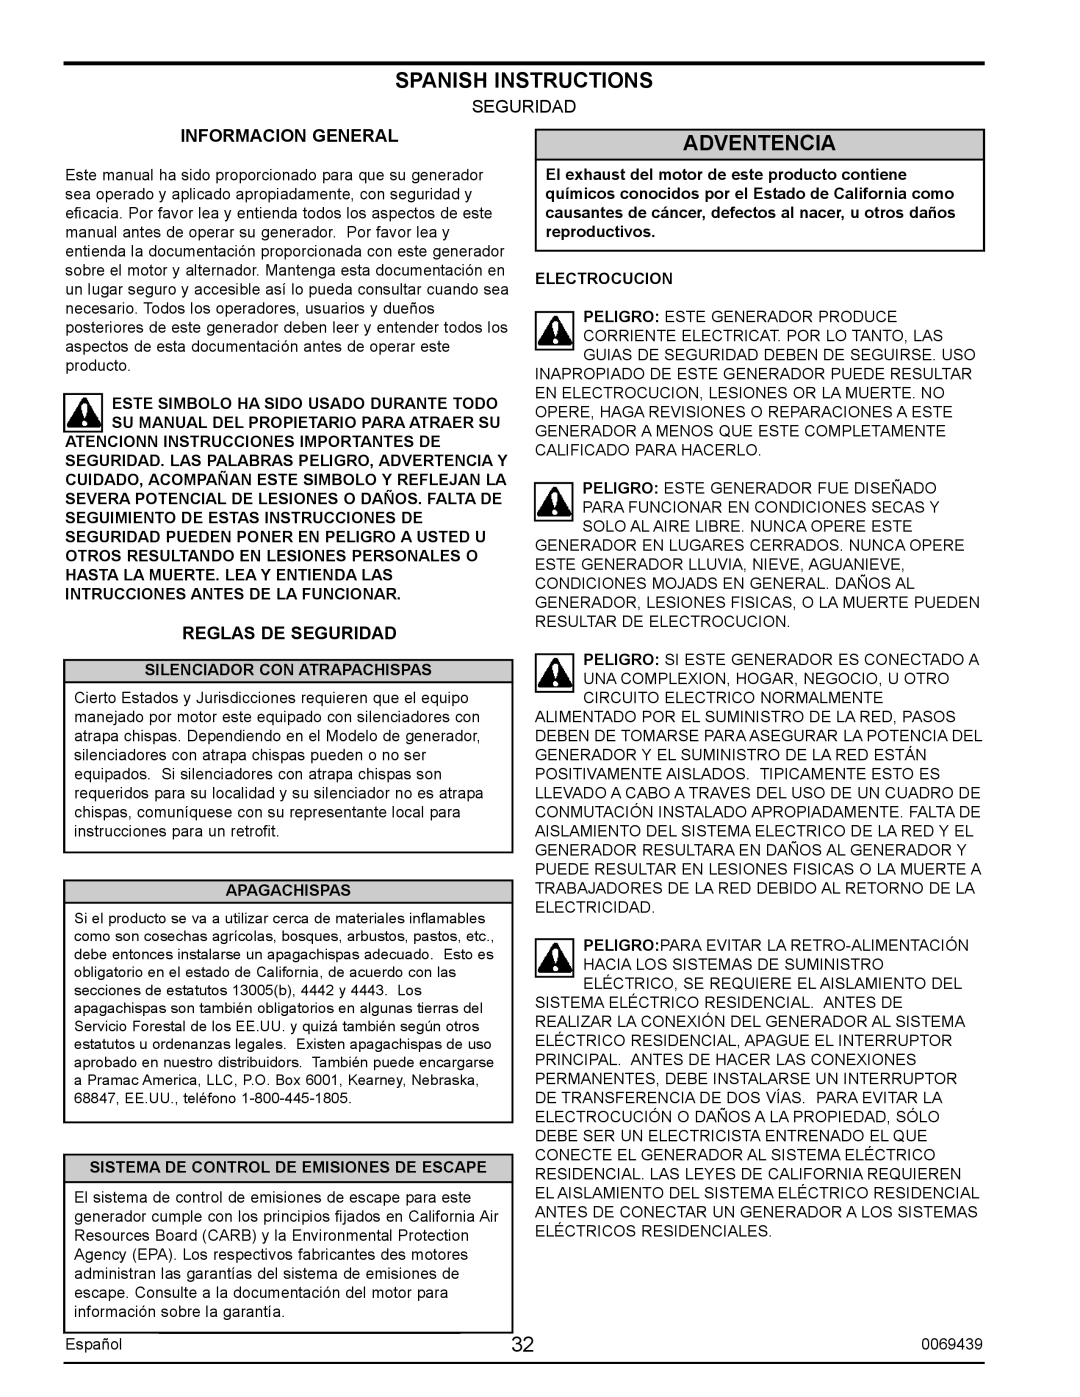 Sears S2800 user manual Spanish Instructions, Adventencia, Electrocucion, Silenciador Con Atrapachispas, Apagachispas 